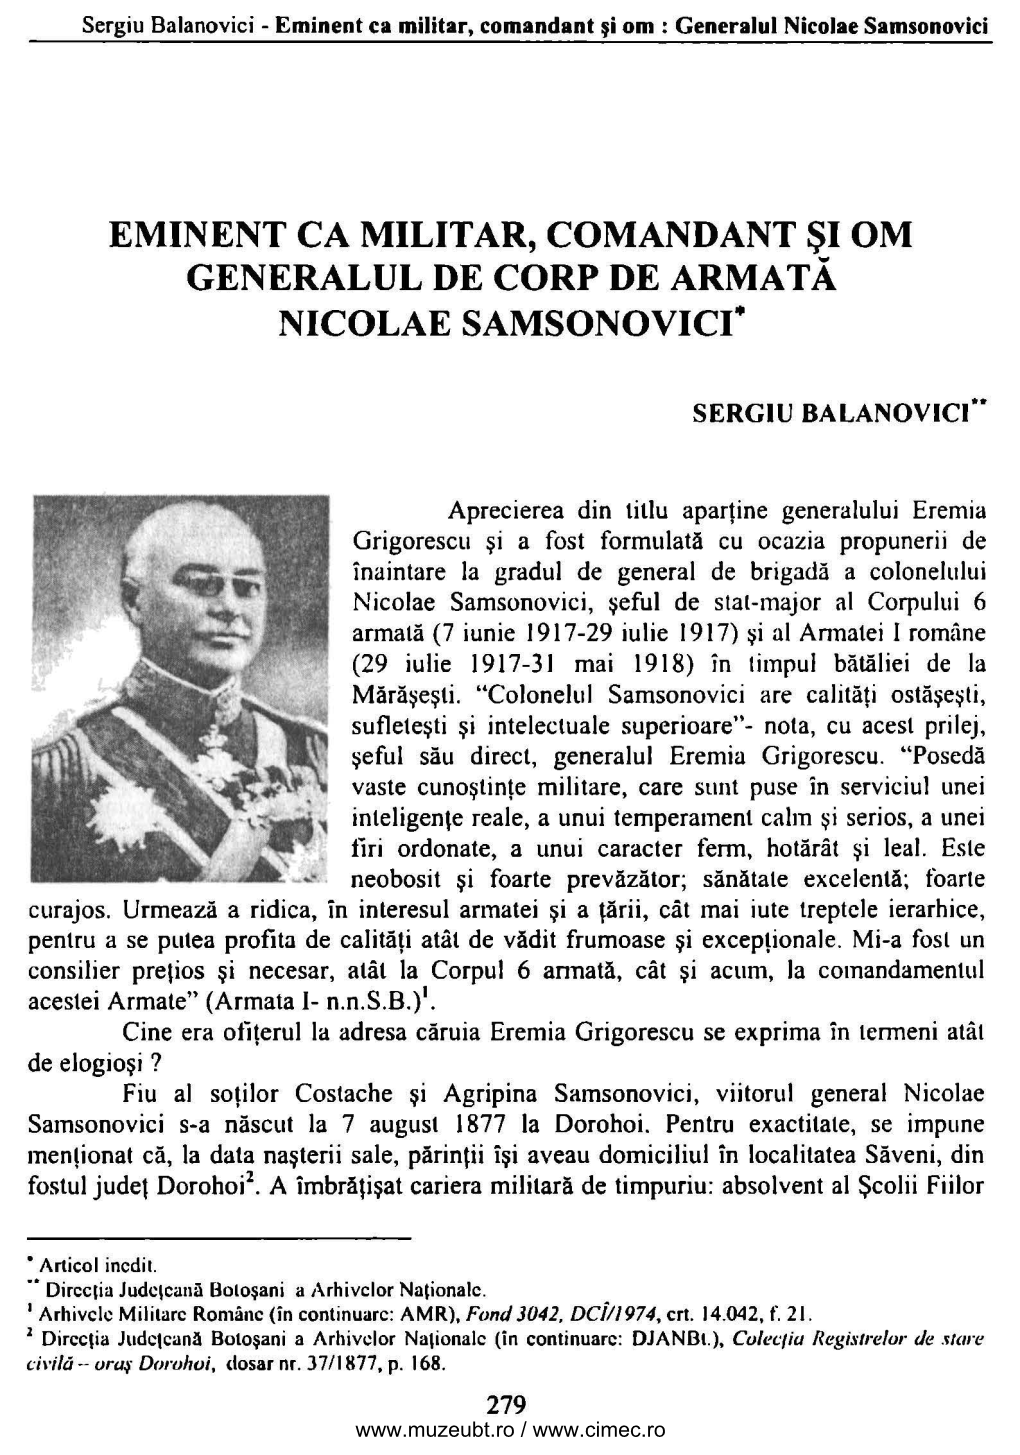 Eminent Ca Militar, Comandant Şi Om Nicolae Samsonovici•